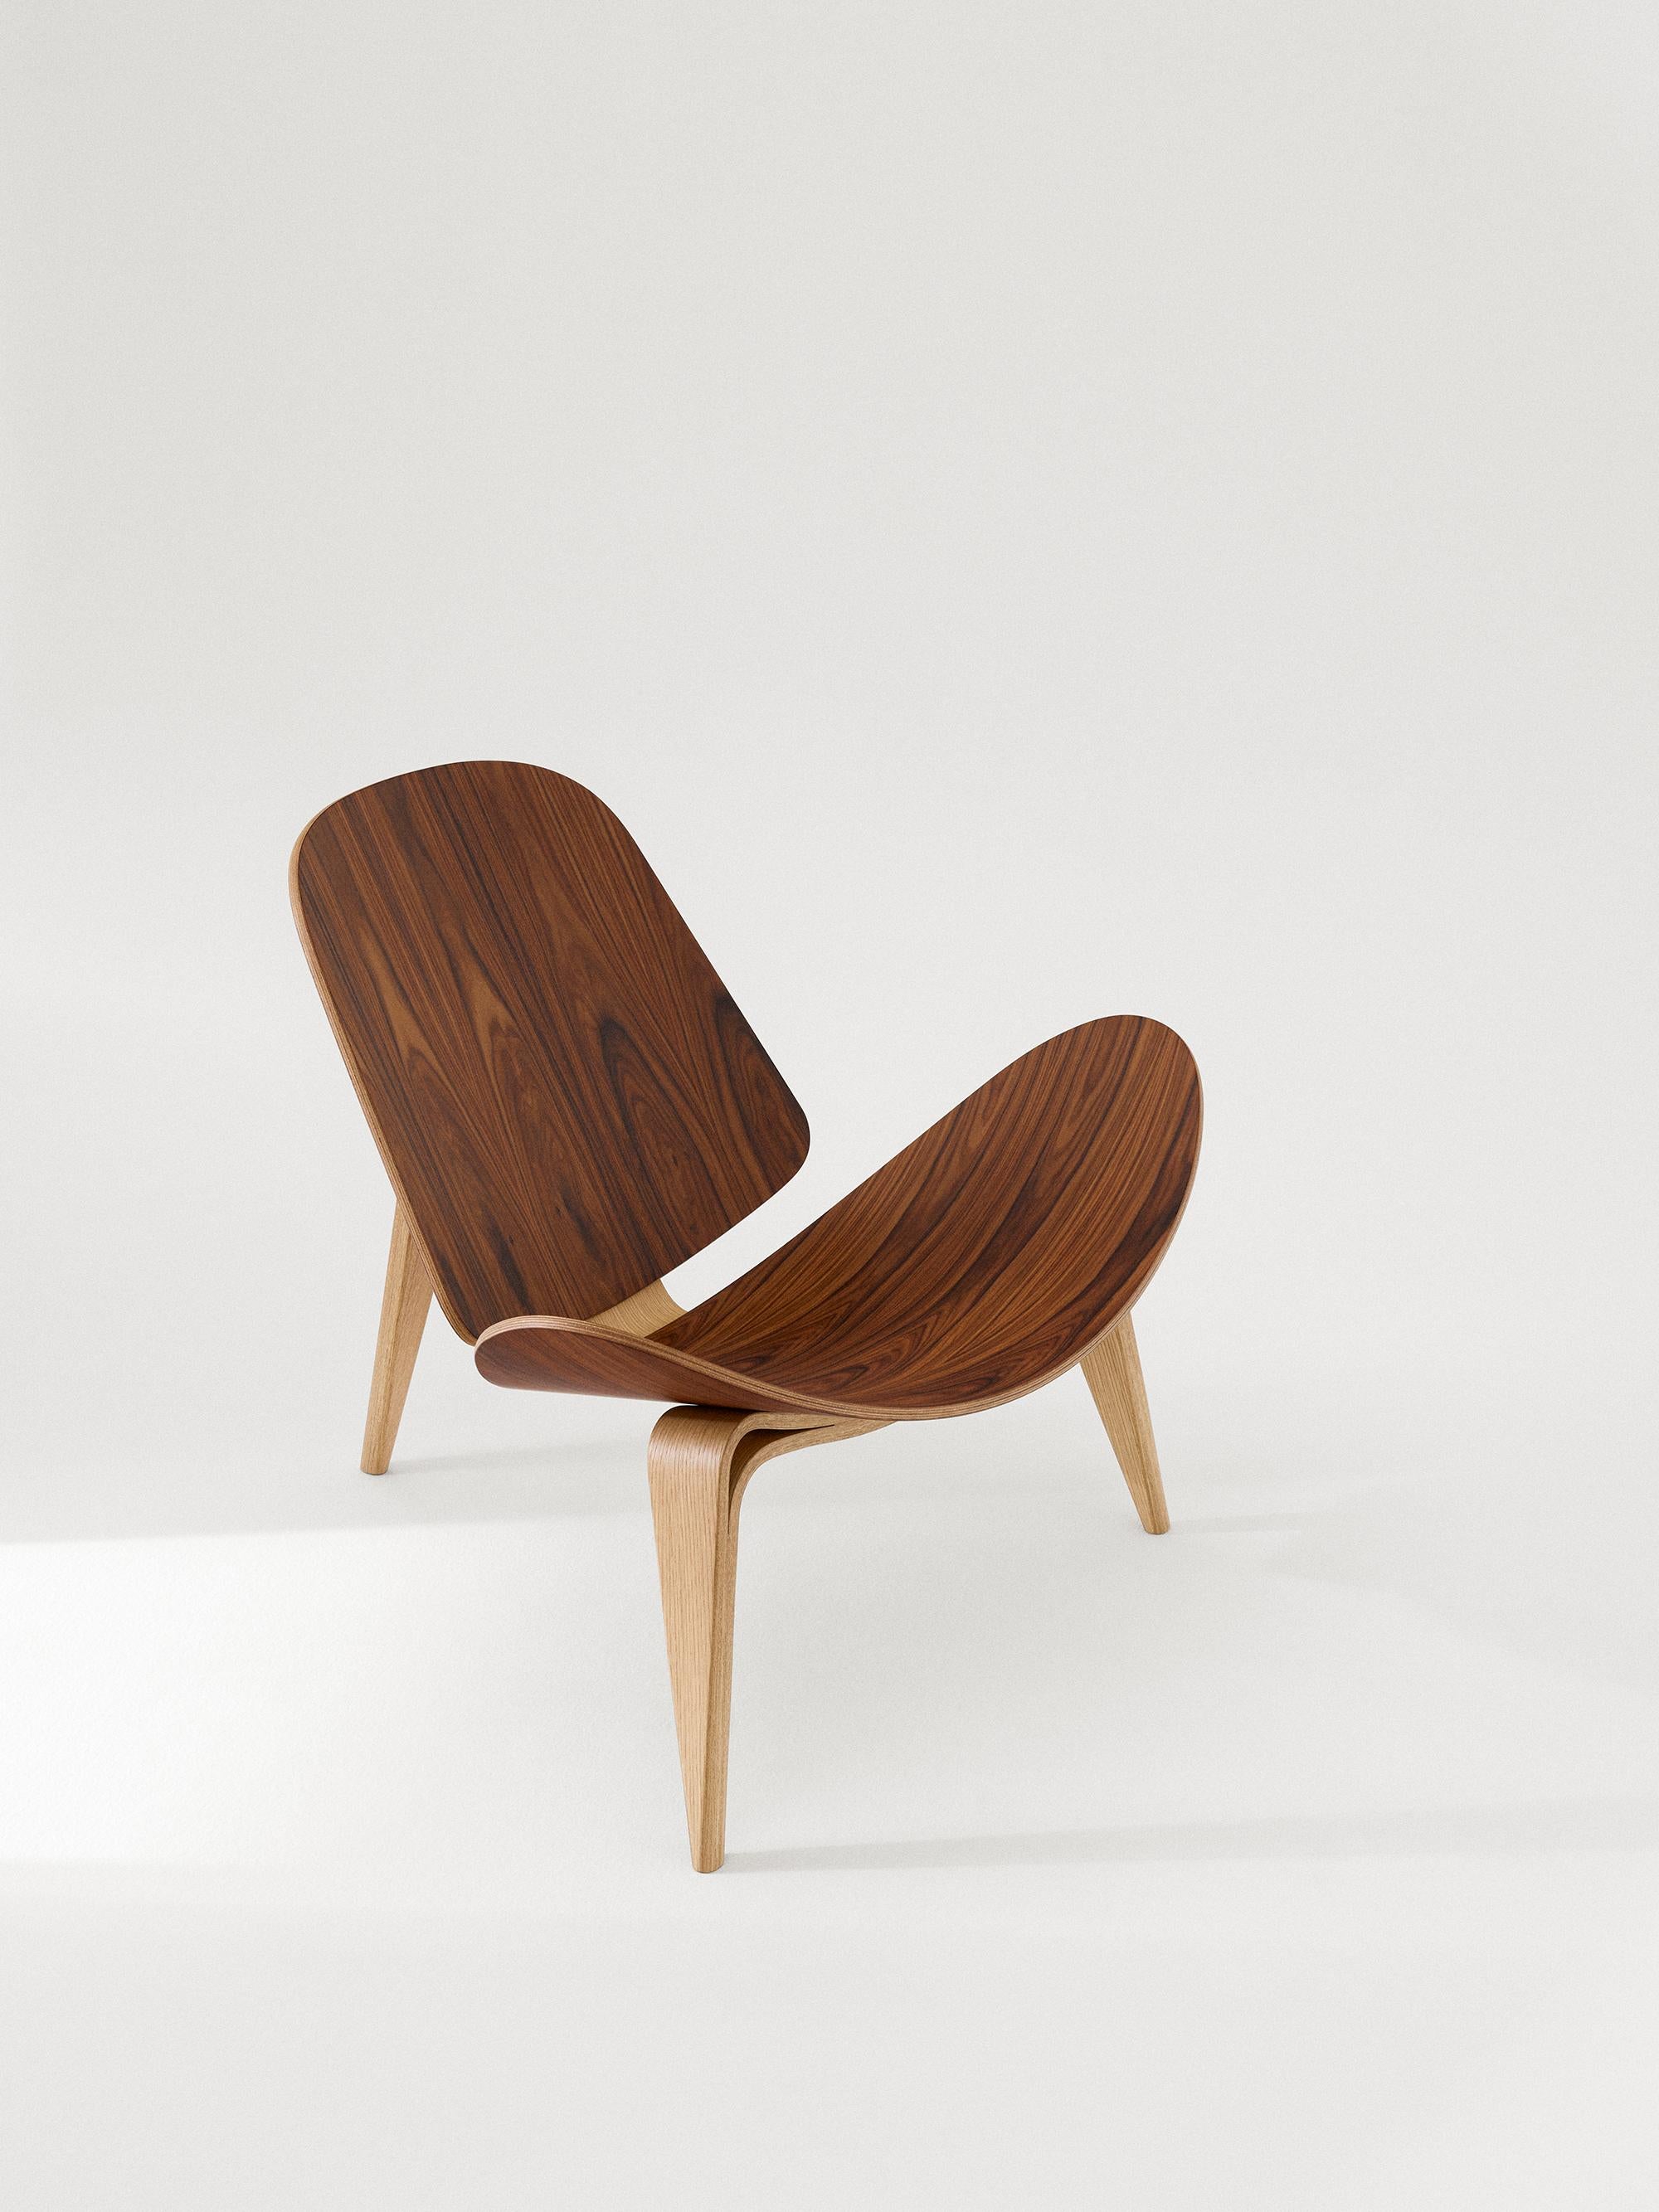 Hans J. Wegner 'CH07 Shell' 60th Anniversary Lounge Chair pour Carl Hansen & Son.

L'histoire de la modernité danoise commence en 1908, lorsque Carl Hansen ouvre son premier atelier. Son engagement ferme en faveur de la beauté, du confort, du